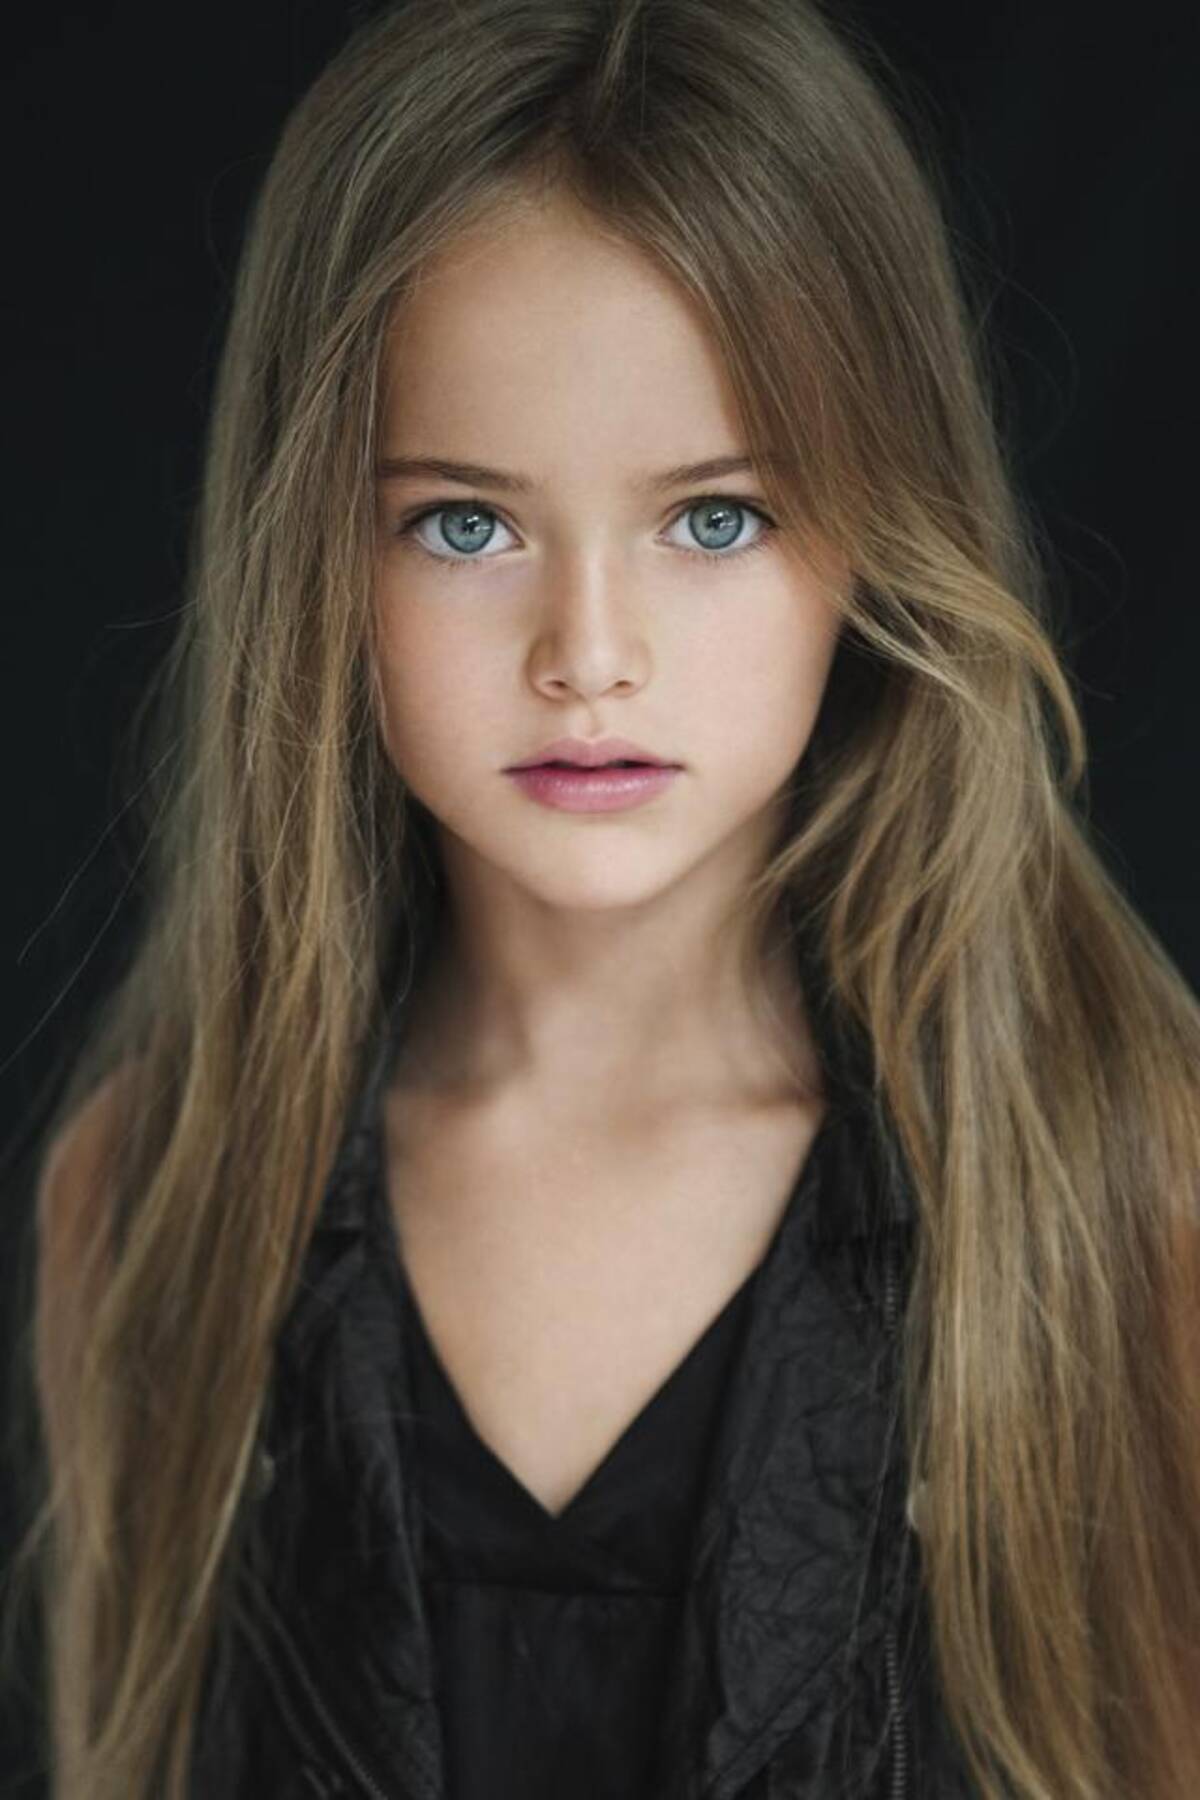 世界美少女探訪 小学生にして恐ろしいほどの美貌 ロシアの完璧美少女 クリスティーナ ピメノヴァ ちゃん 8歳 14年11月日 エキサイトニュース 2 2